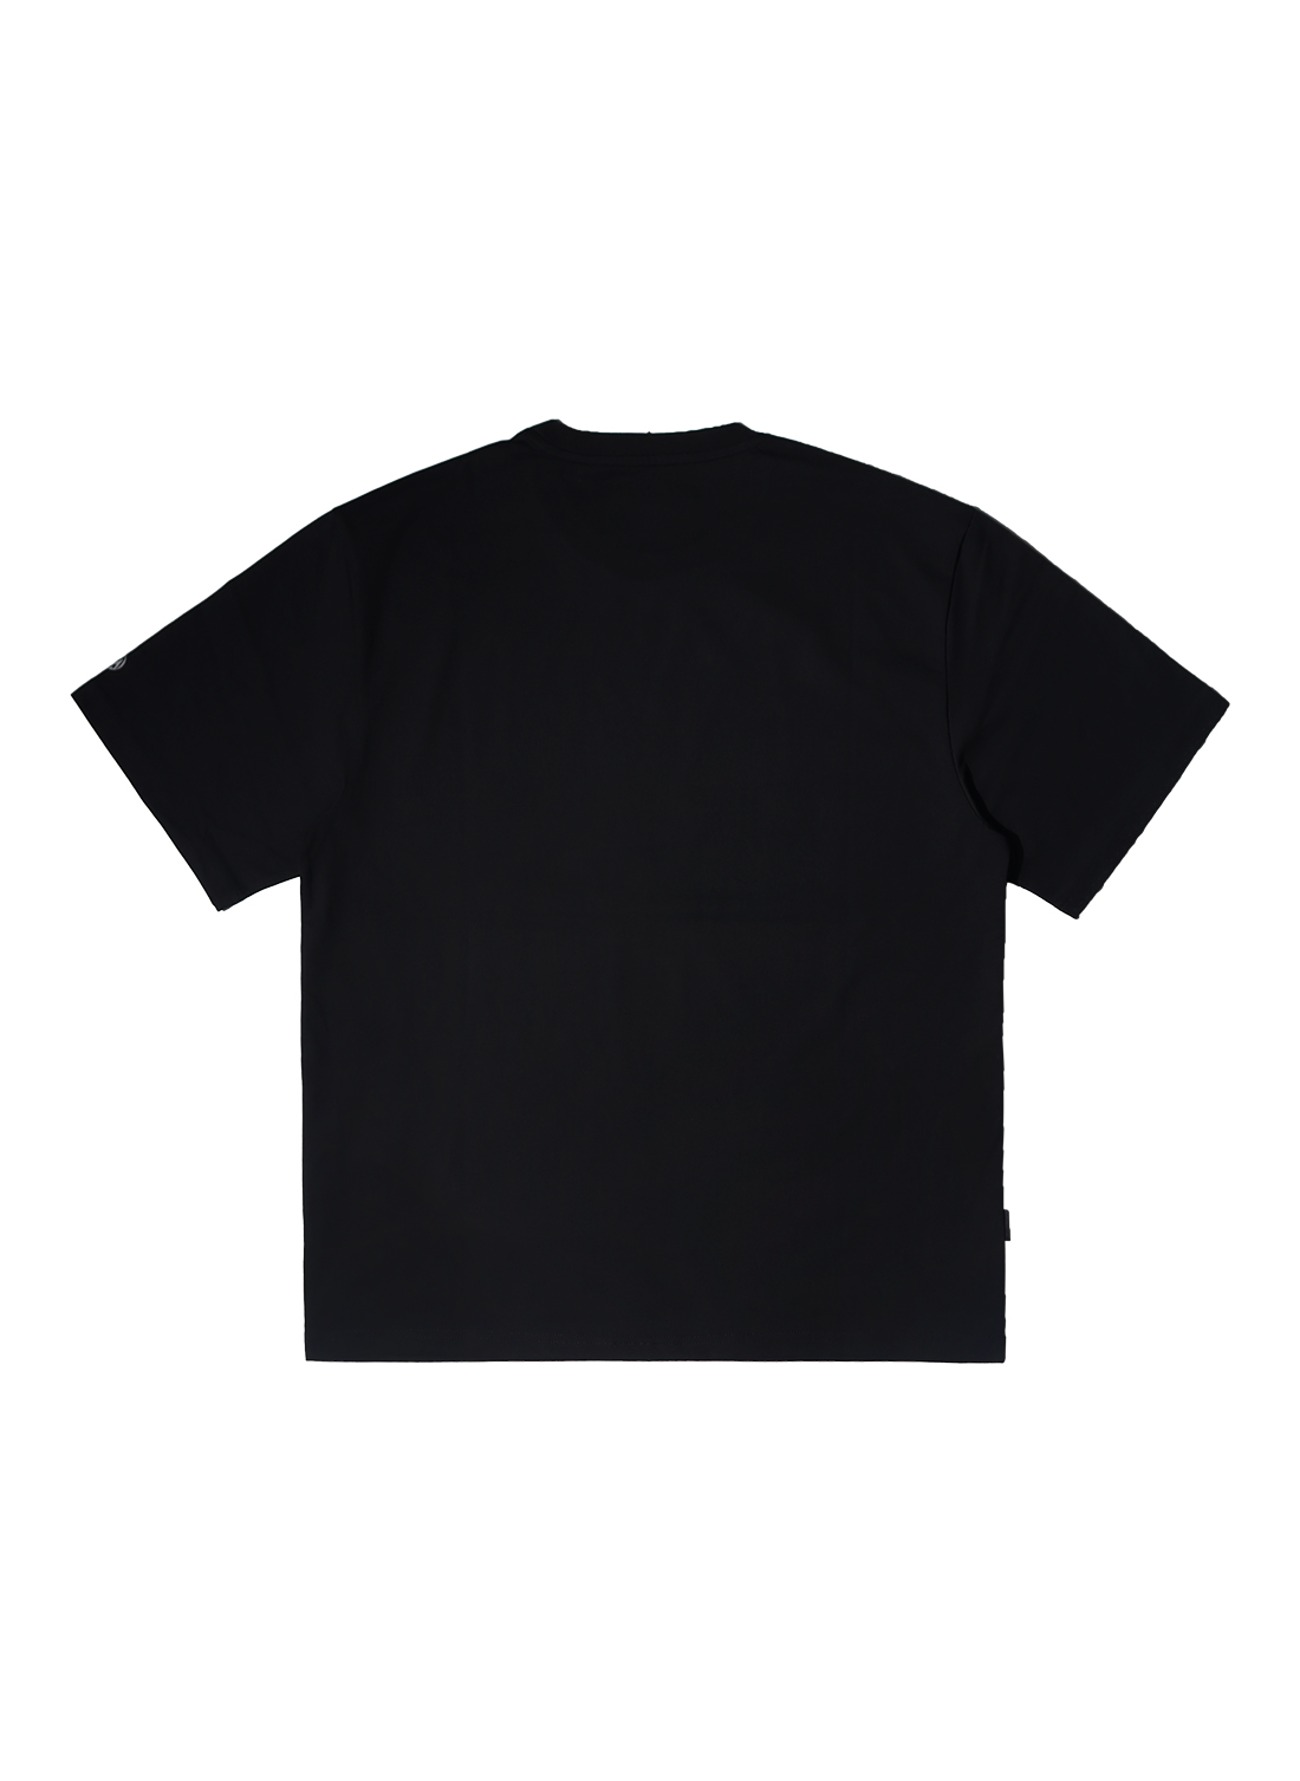 OG 베이직 로고 티셔츠-블랙